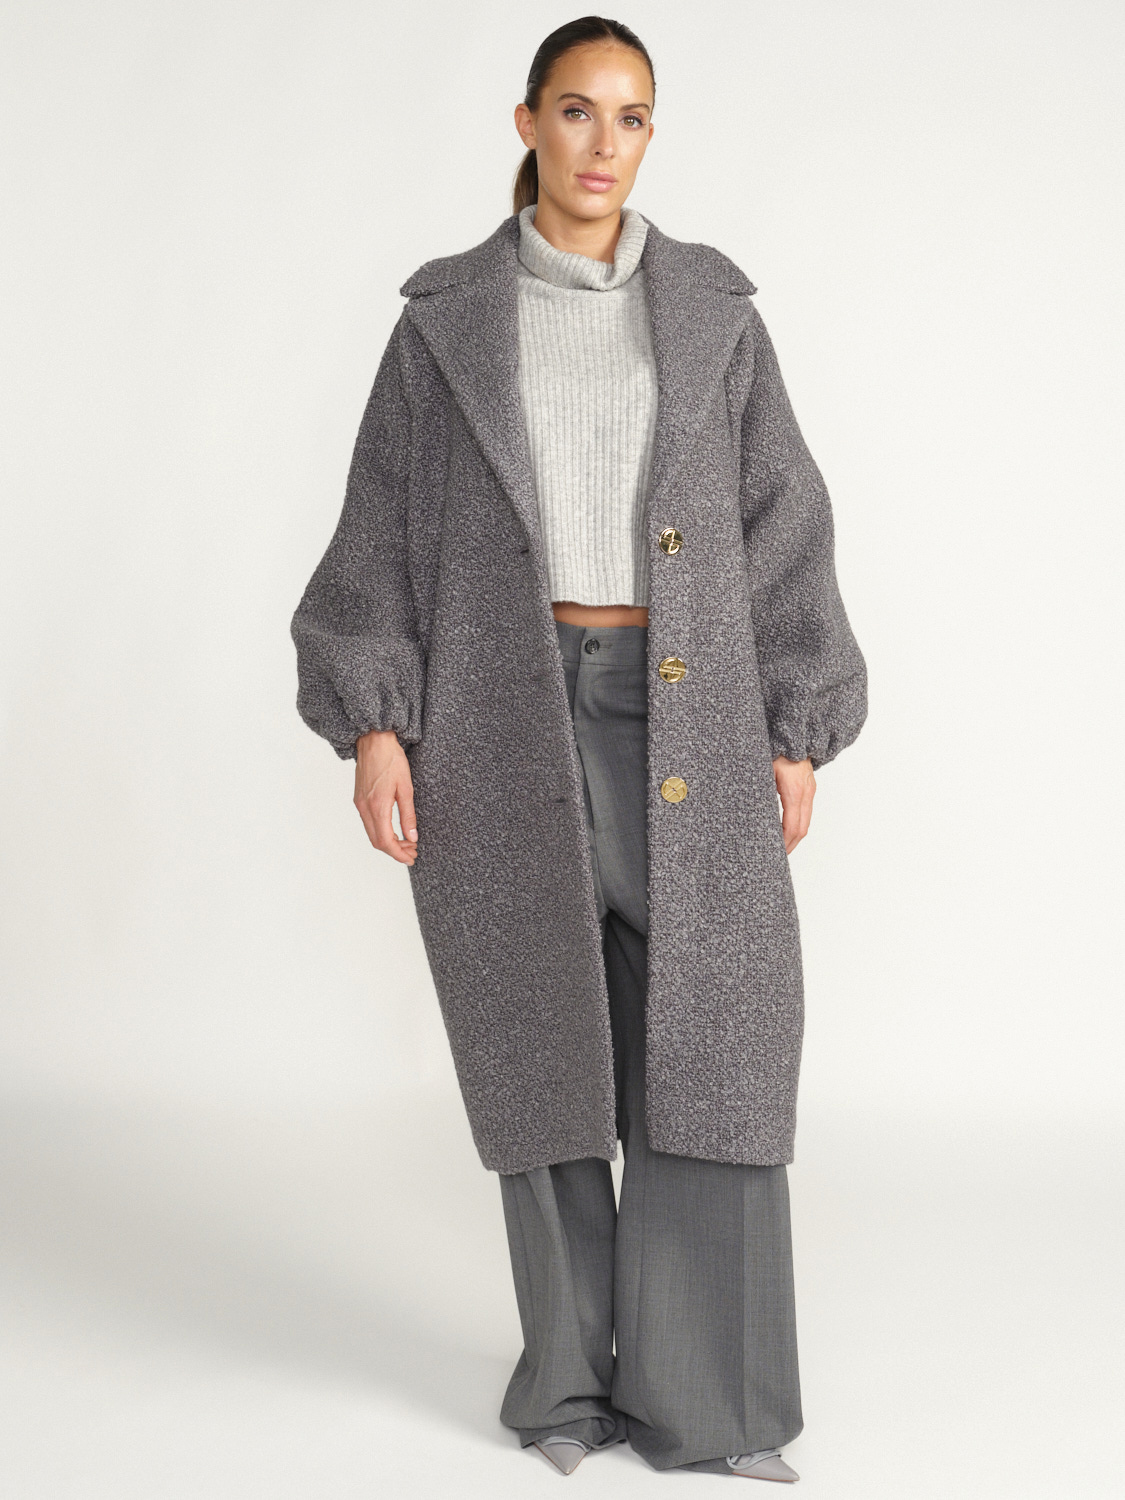 Patou Abrigo Elíptico - Nuevo abrigo de lana gris S